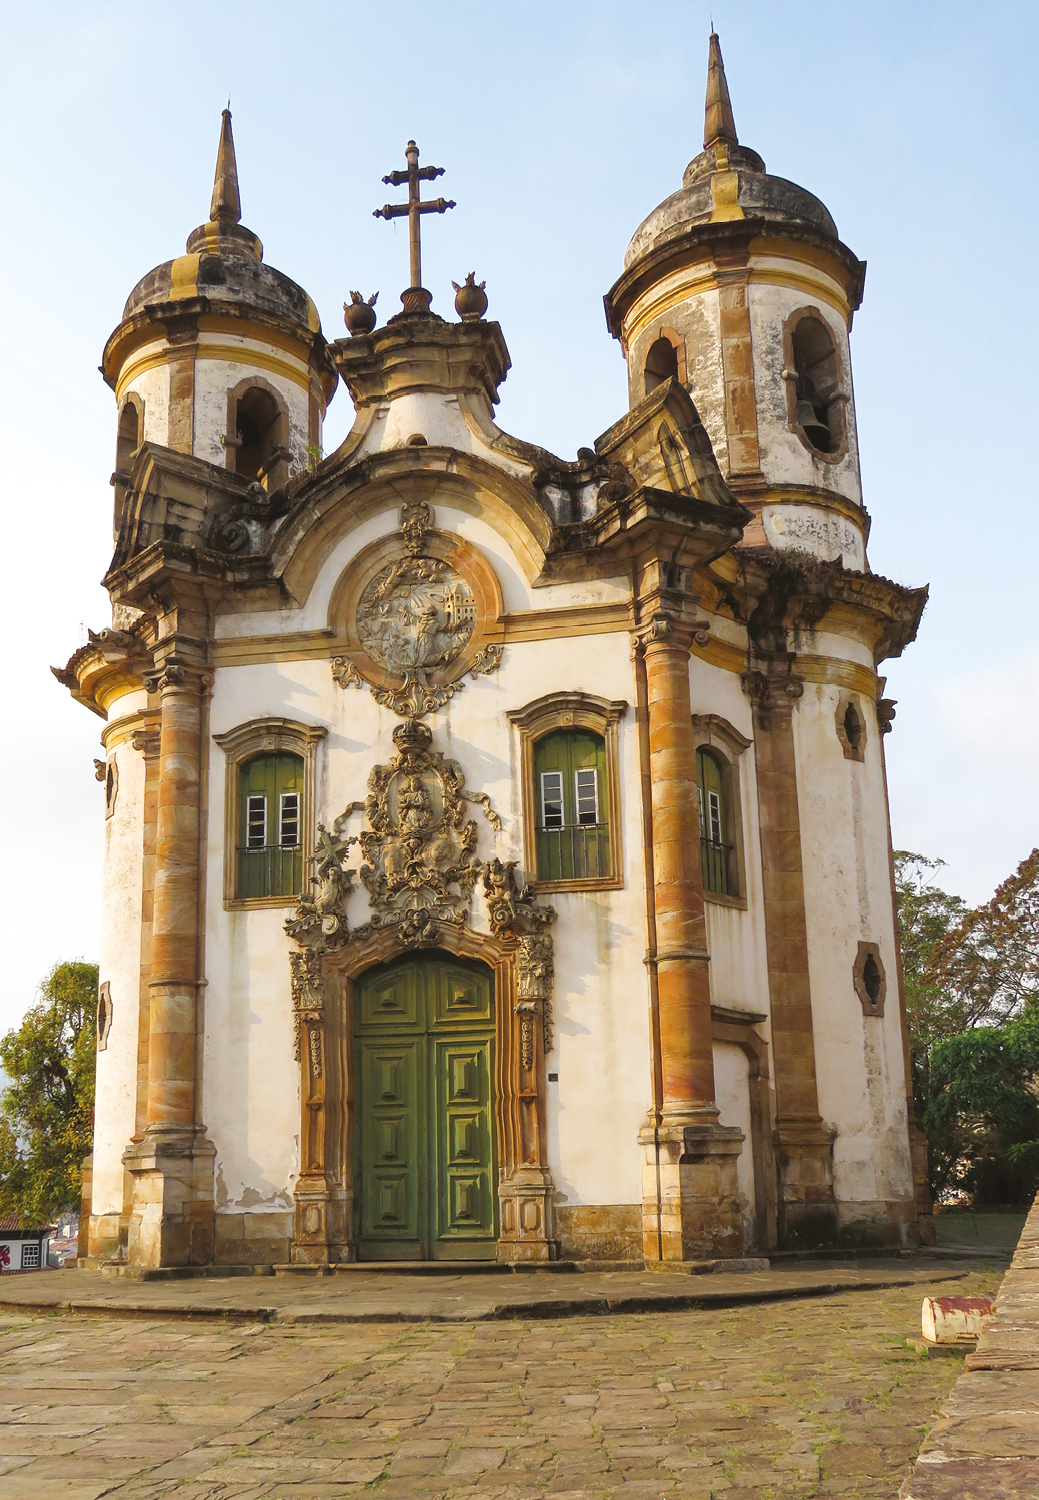 Fotografia. Fachada de  igreja com pintura branca desgastada e adornos dourados,  duas torres com sinos, uma cruz no centro, três pequenas janelas no alto e uma porta central verde.